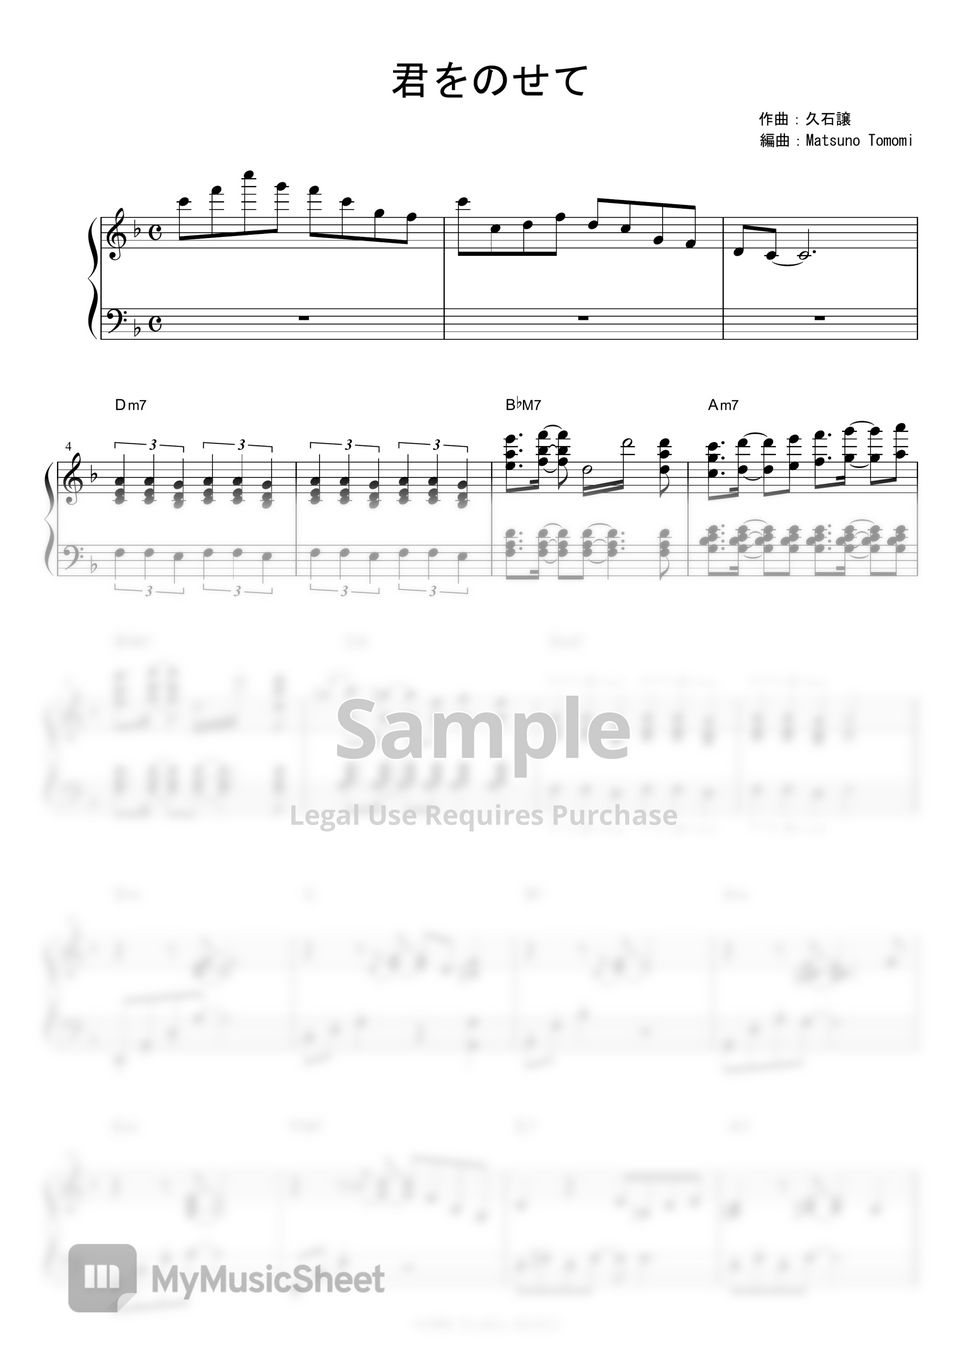 久石譲 - 君をのせて (Jazz ver./ボーカル伴奏譜) by piano*score